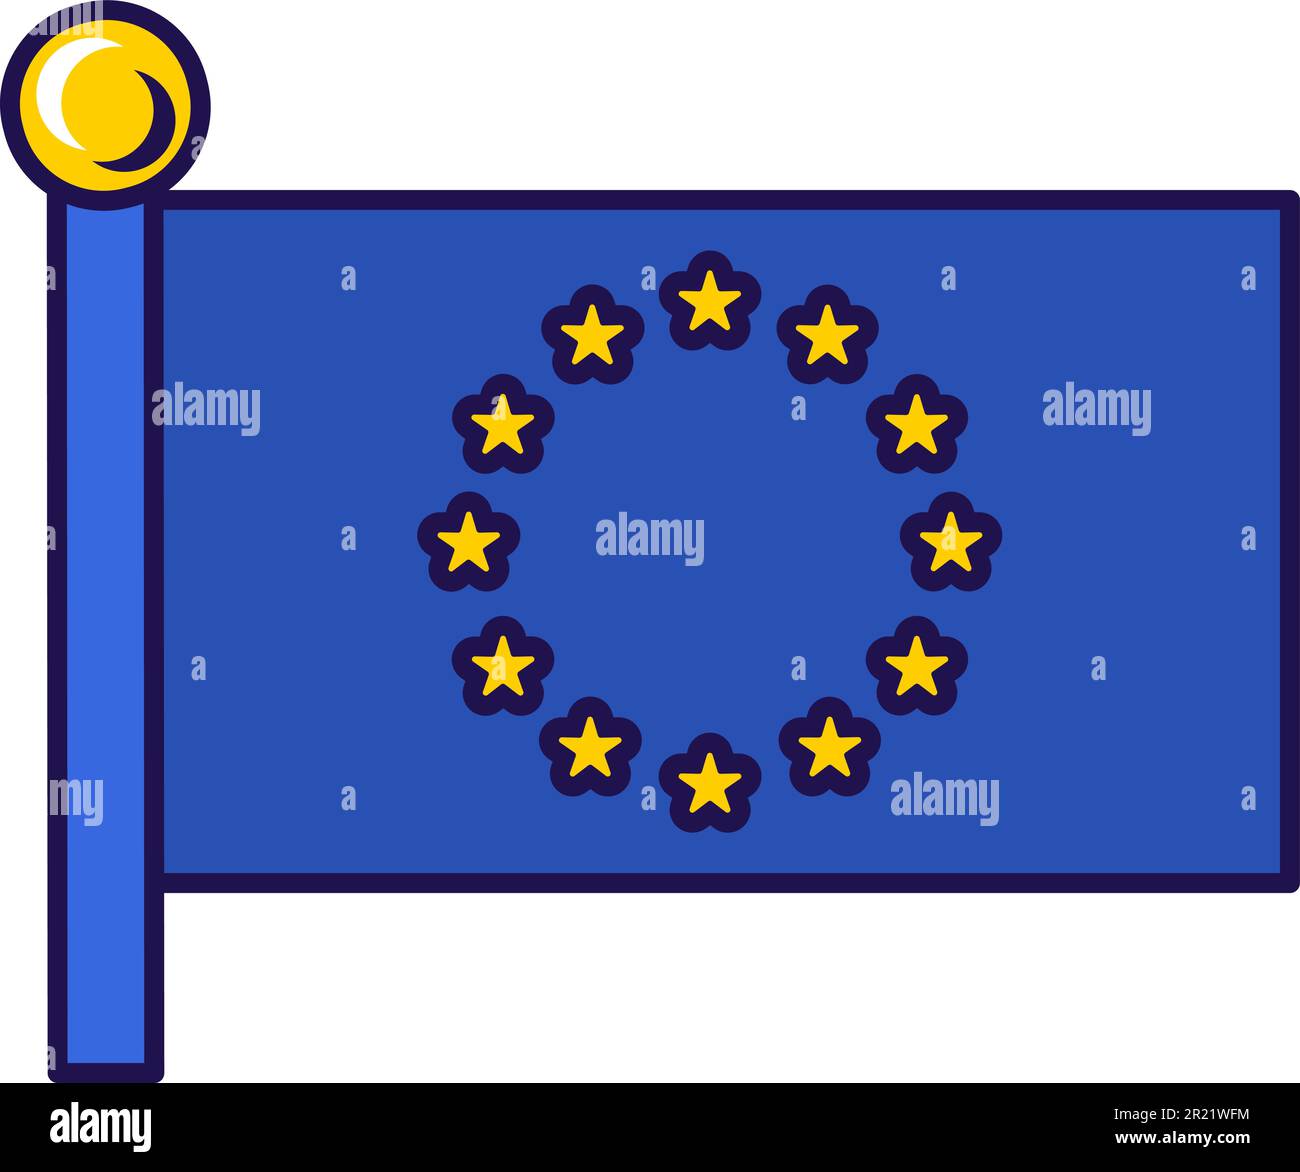 Drapeau officiel de l'Union européenne sur flagstaff Vector. Symbole des pays membres du Conseil de l'europe. Cercle d'étoiles dorées sur pôle bleu, insi traditionnel Illustration de Vecteur